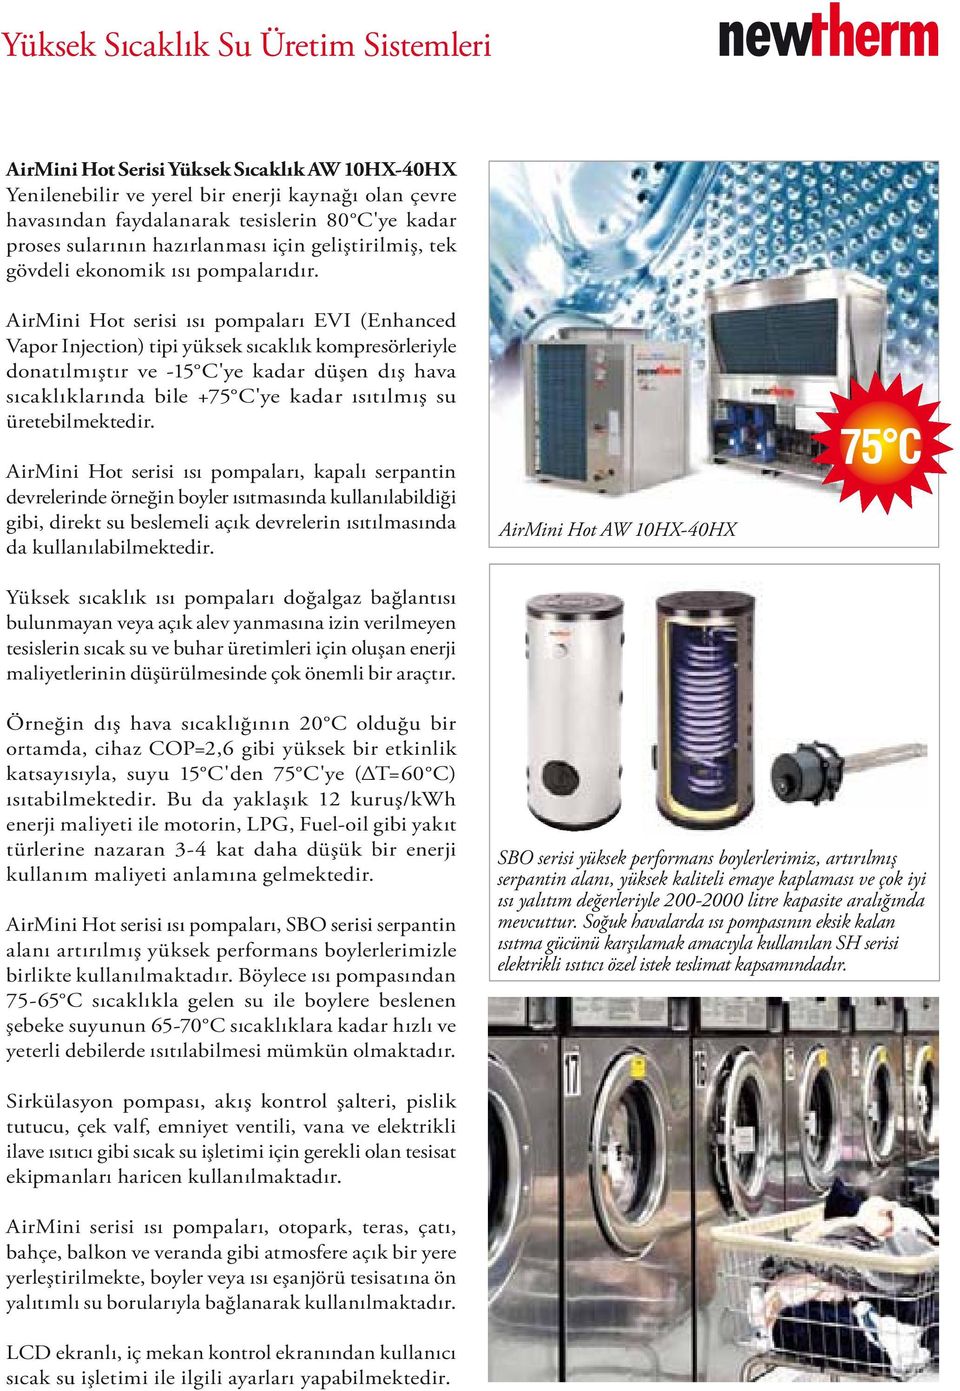 AirMini Hot serisi ısı pompaları EVI (Enhanced Vapor Injection) tipi yüksek sıcaklık kompresörleriyle donatılmıştır ve -15 C'ye kadar düşen dış hava sıcaklıklarında bile +75 C'ye kadar ısıtılmış su